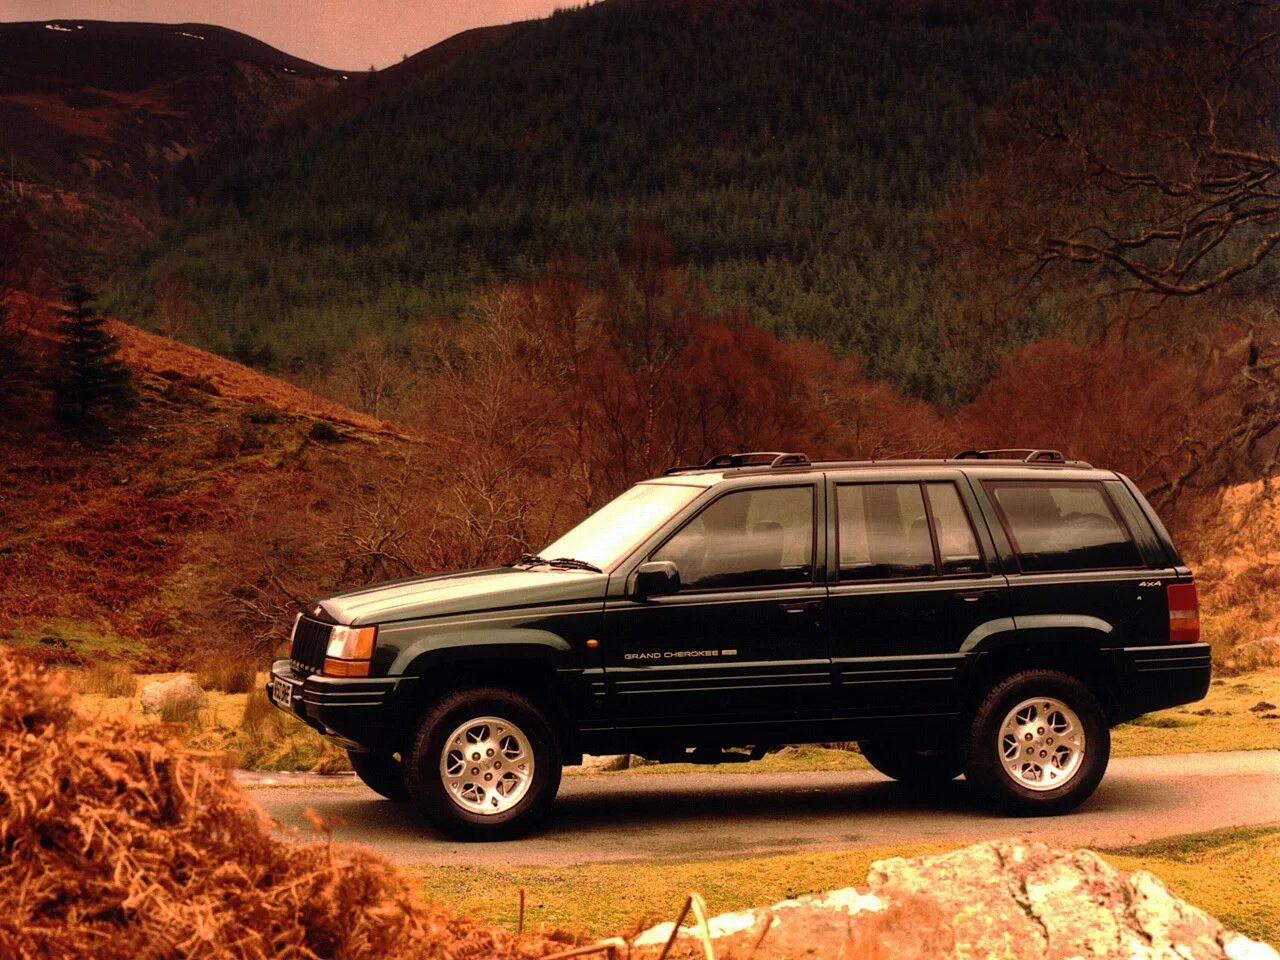 Jeep zj. Jeep Grand Cherokee 1996. Jeep Grand Cherokee ZJ. Джип Grand Cherokee 1996. Jeep Grand Cherokee 1996 5.2.